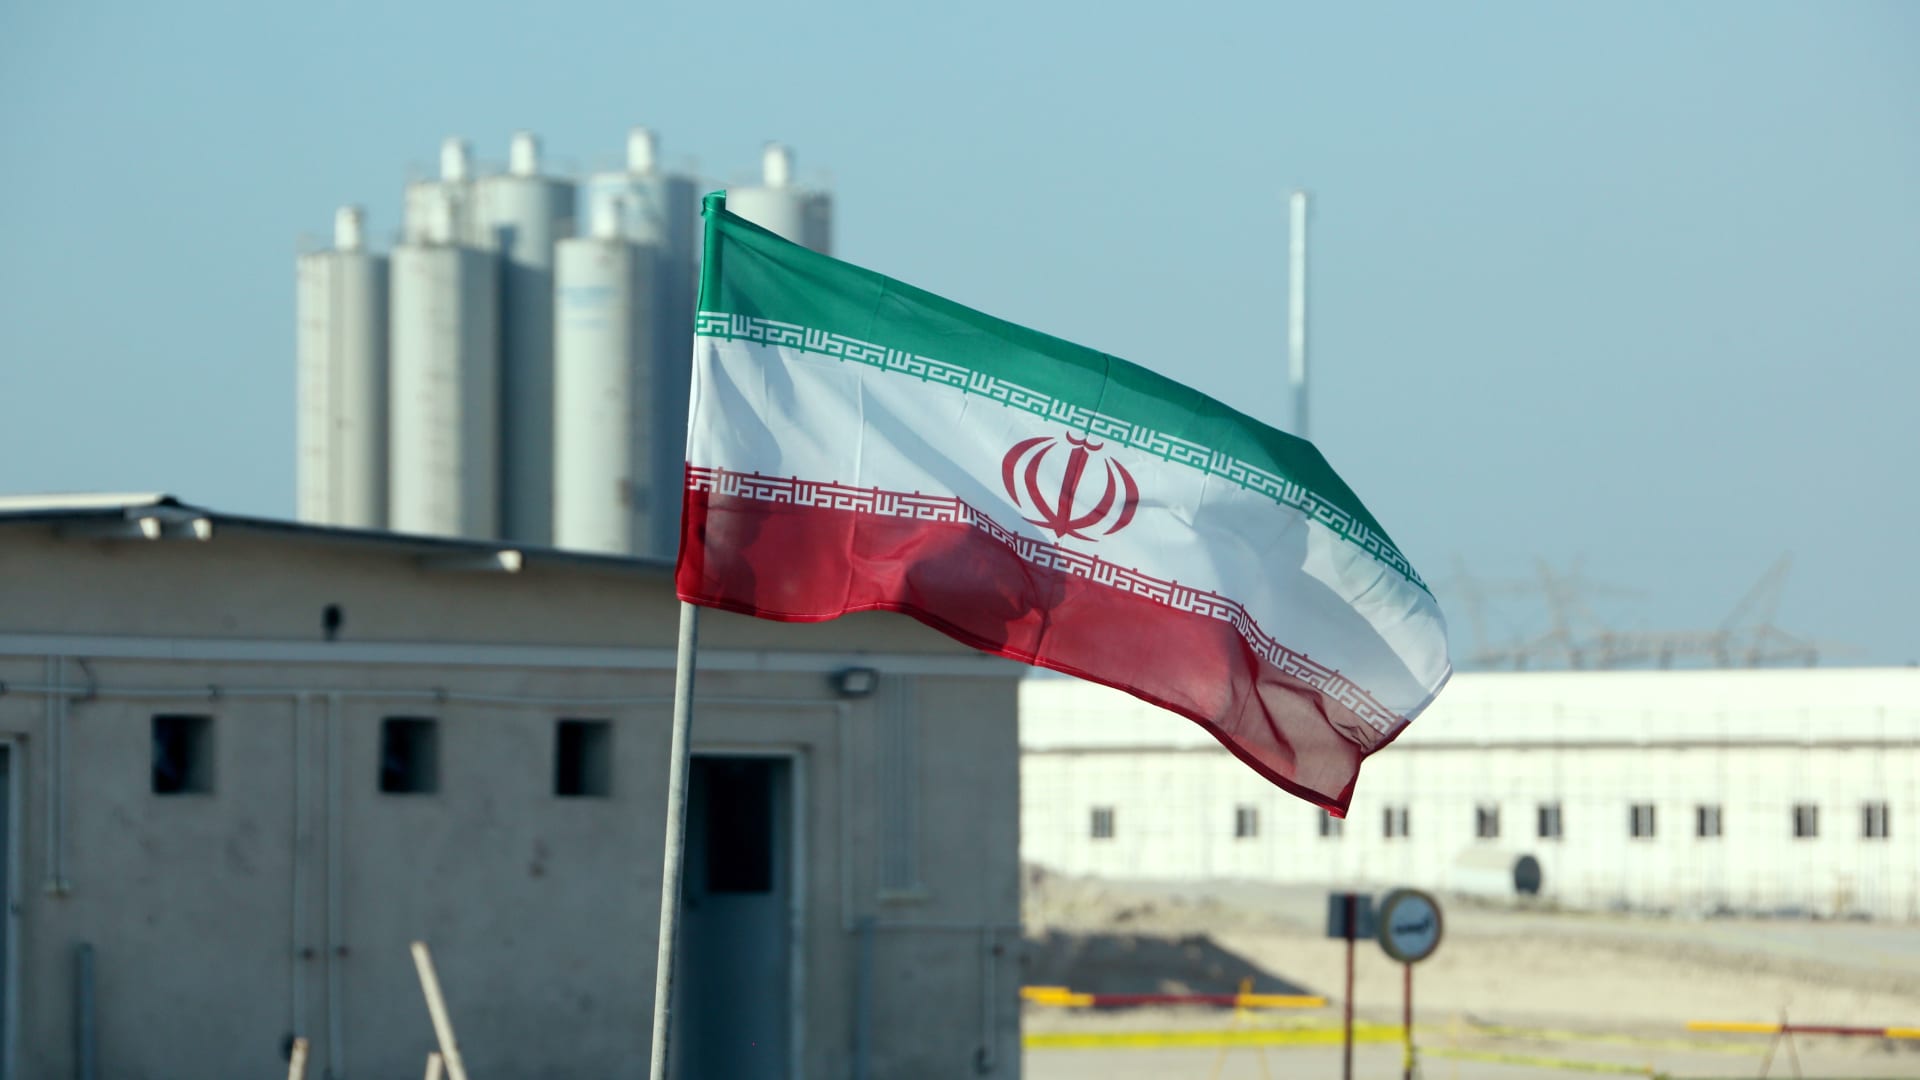 ظريف يتساءل إن ستتبع إدارة بايدن سياسة ترامب "الفاشلة" بالمف النووي الإيراني